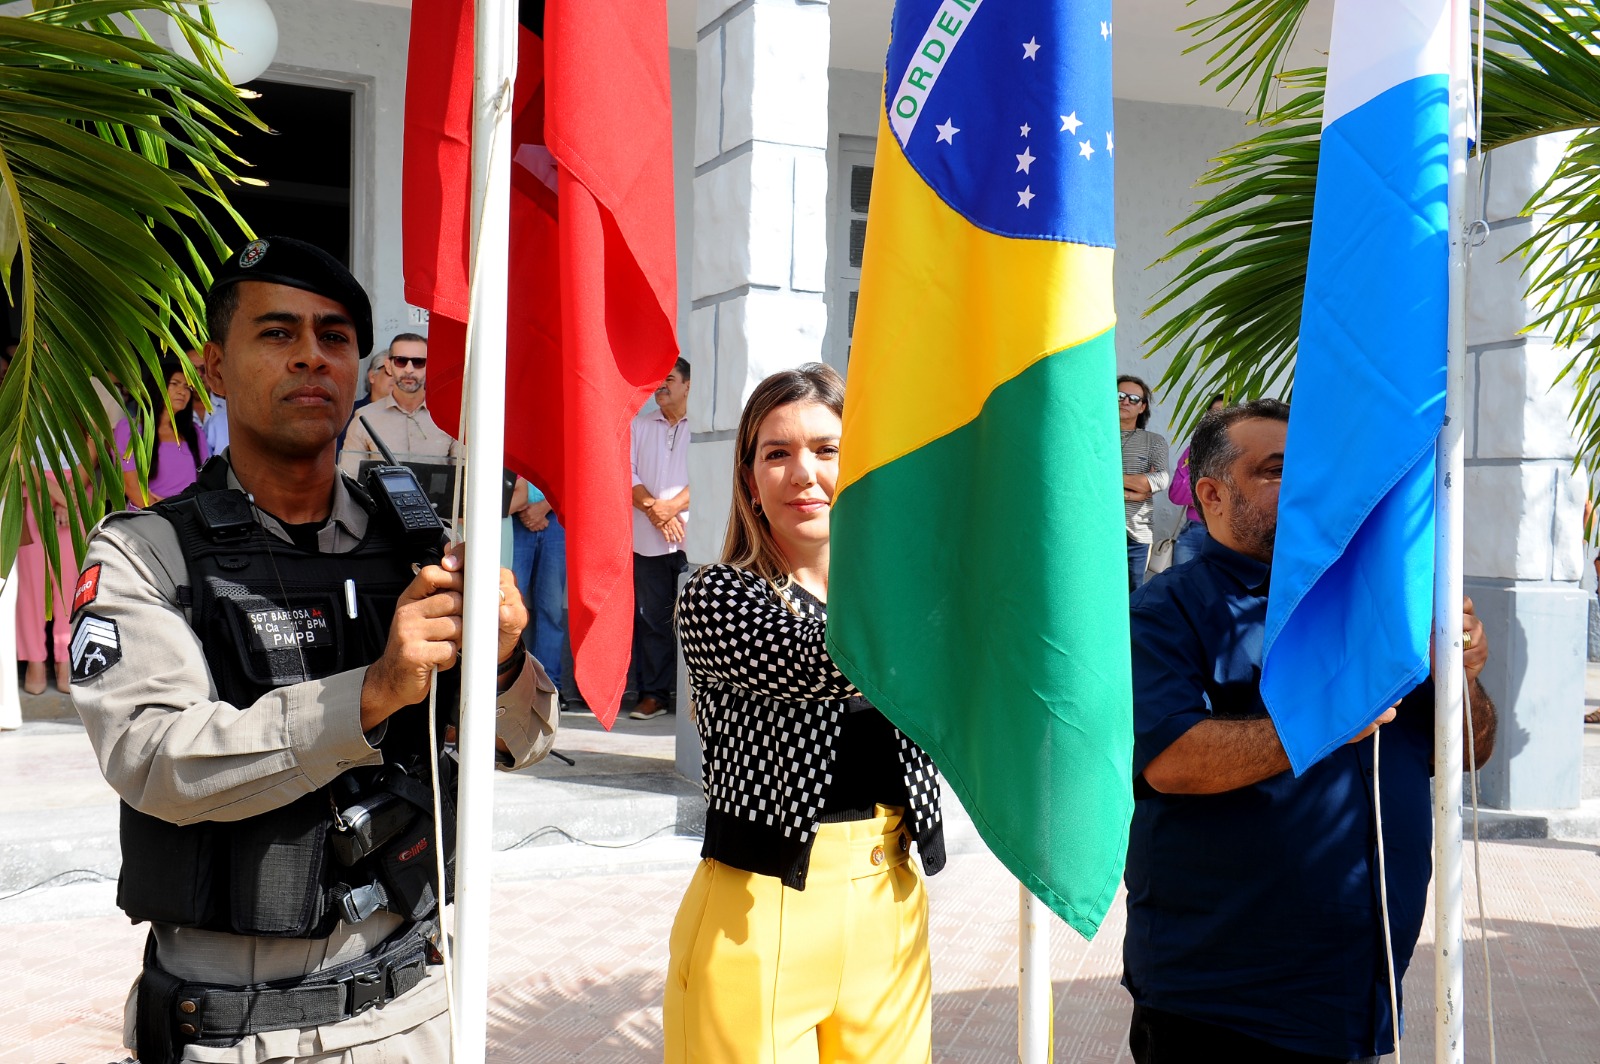 Semana-da-Patria-8 Prefeita Anna Lorena abre oficialmente Semana da Pátria com hasteamento das bandeiras